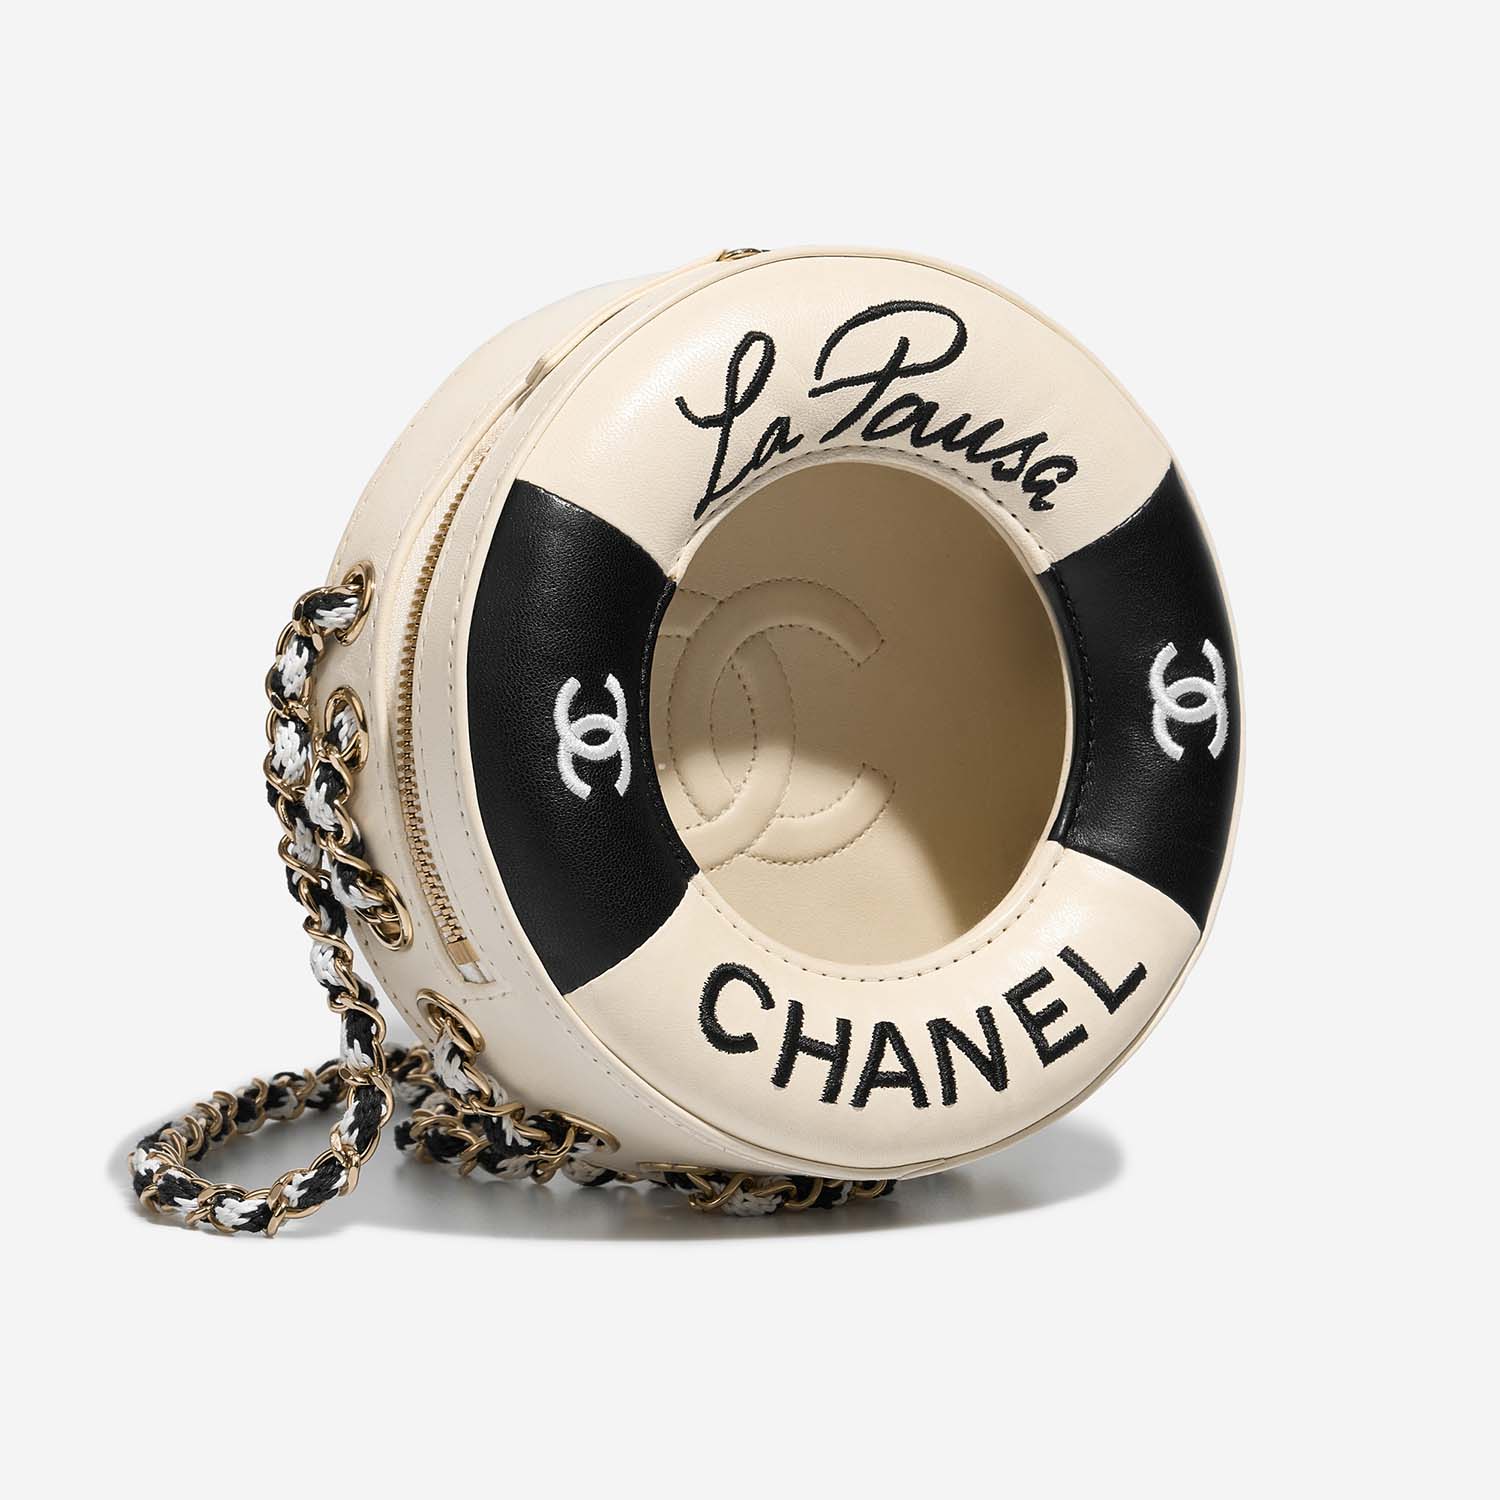 Chanel Cruise19LaPausaLifeSaverRound Schwarz-Weiß 6SF S | Verkaufen Sie Ihre Designer-Tasche auf Saclab.com